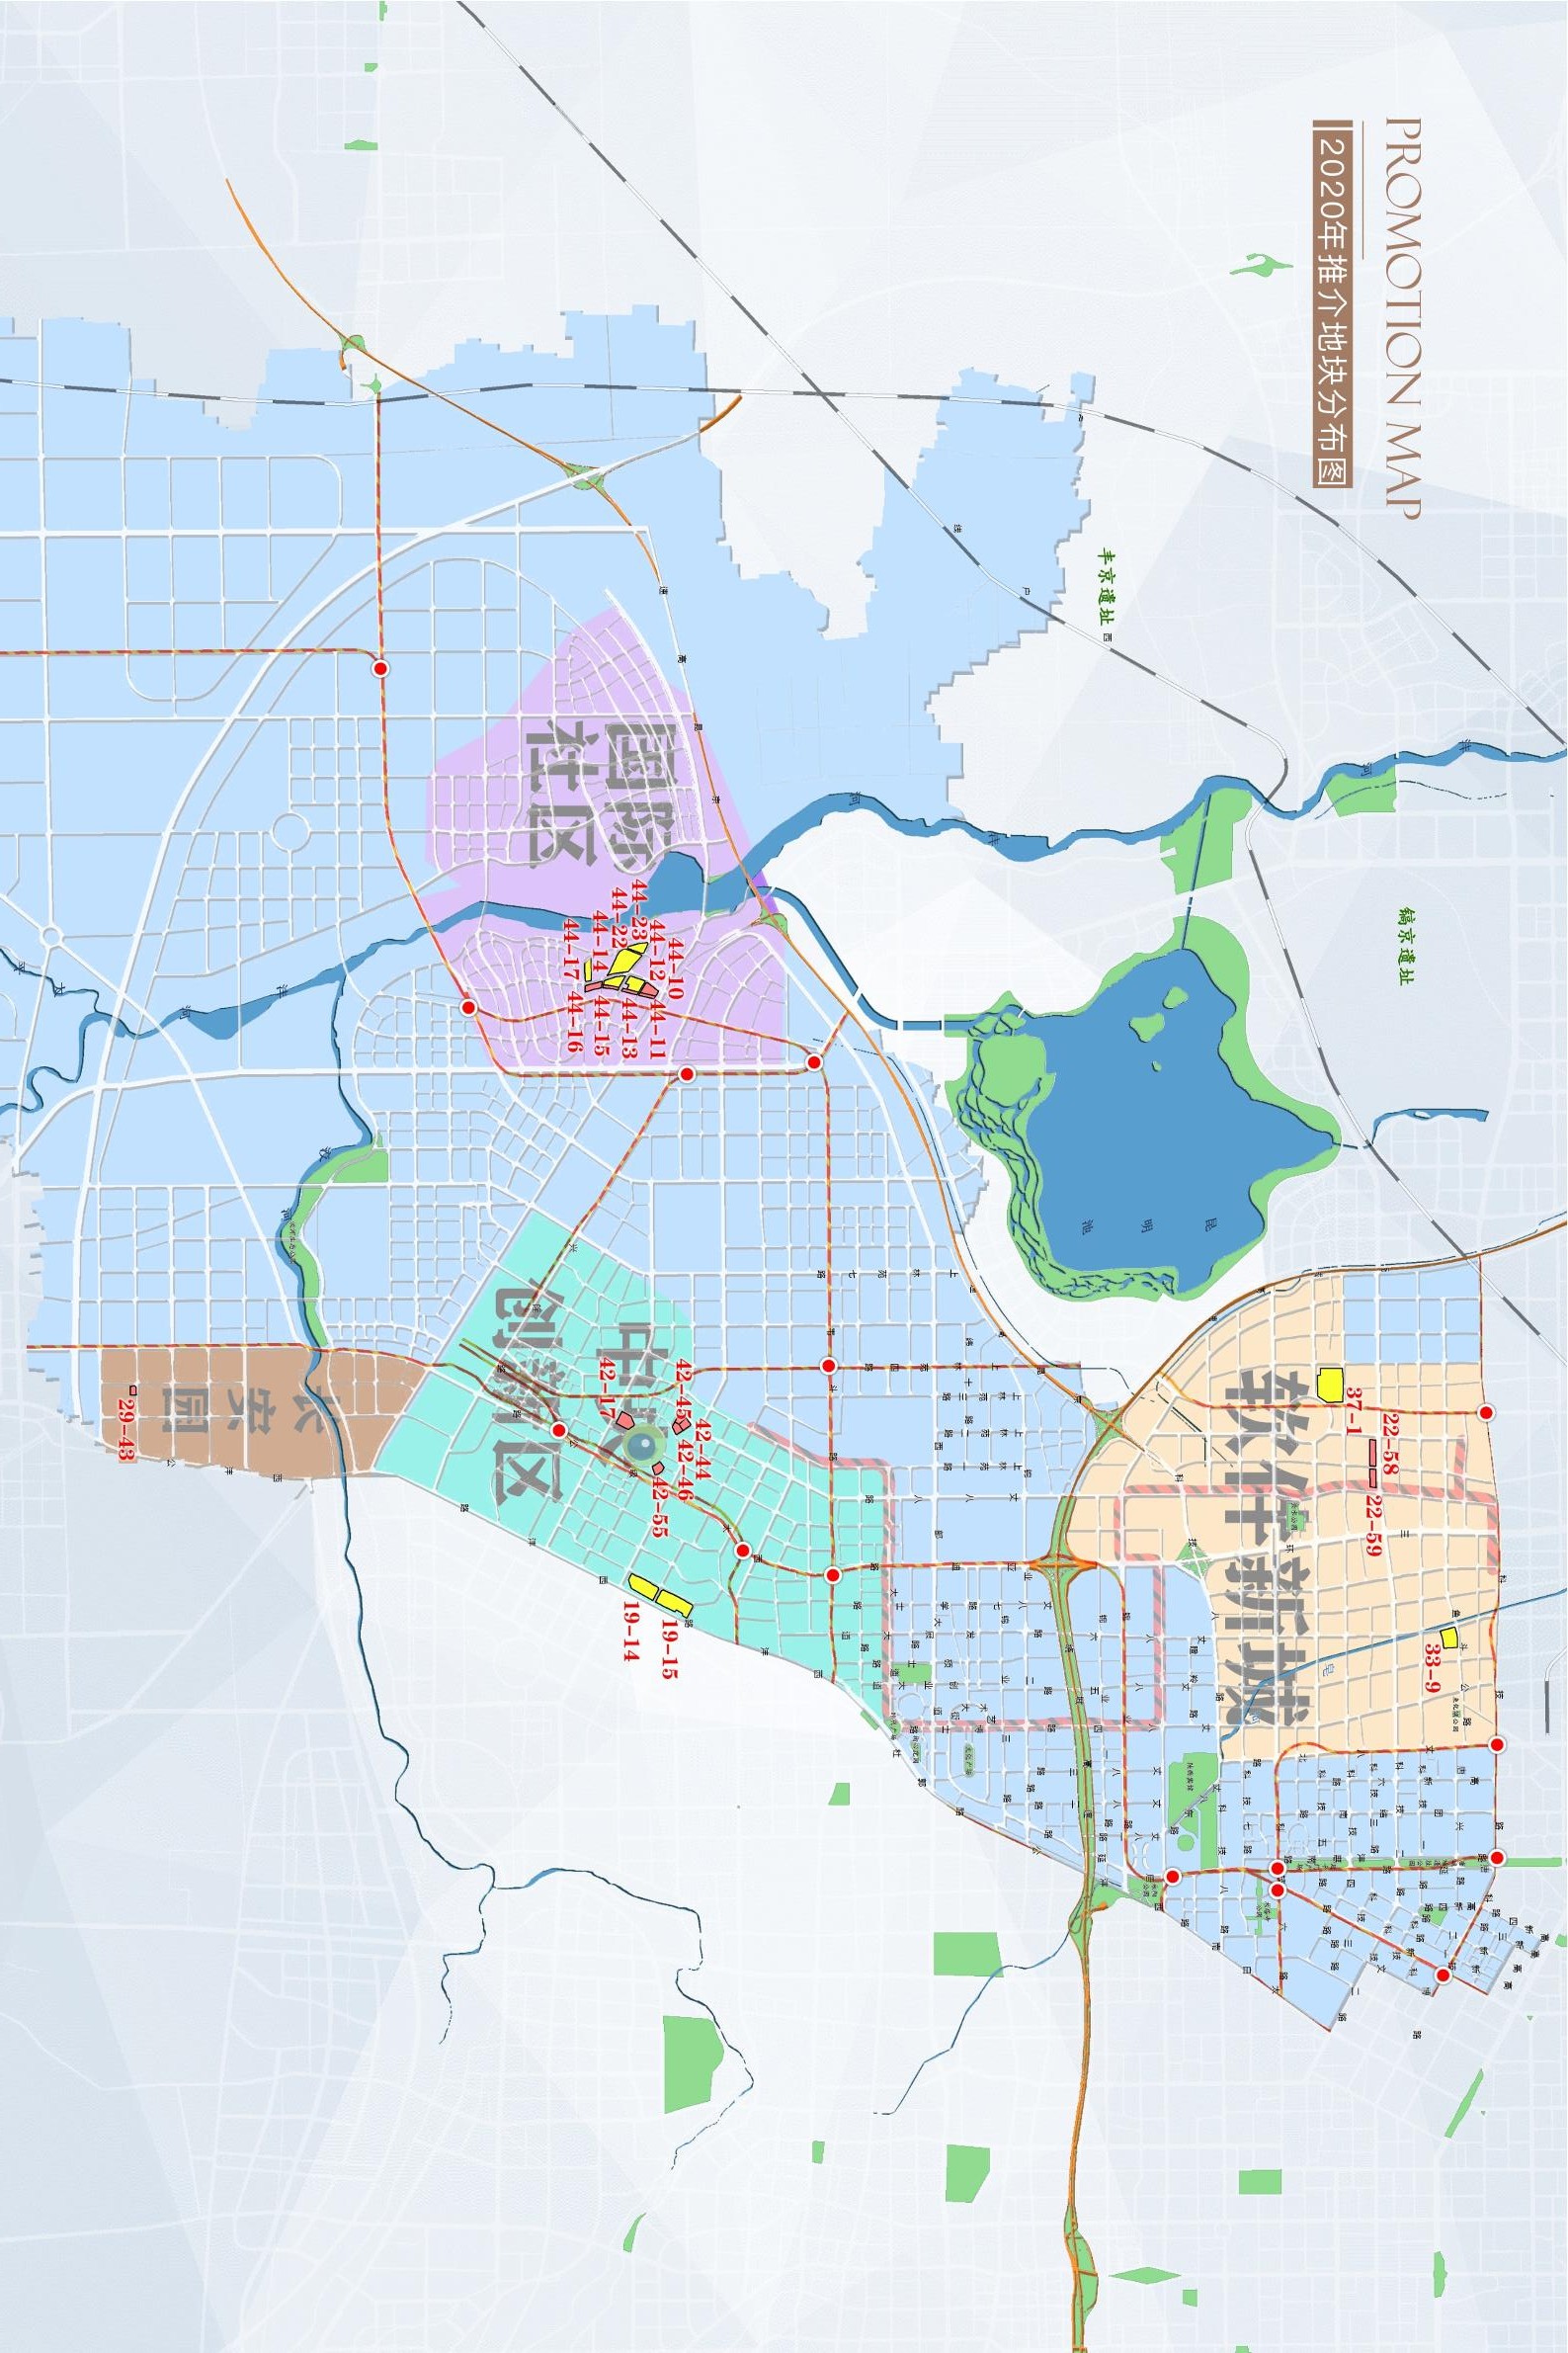 西安高新区区域划分图片